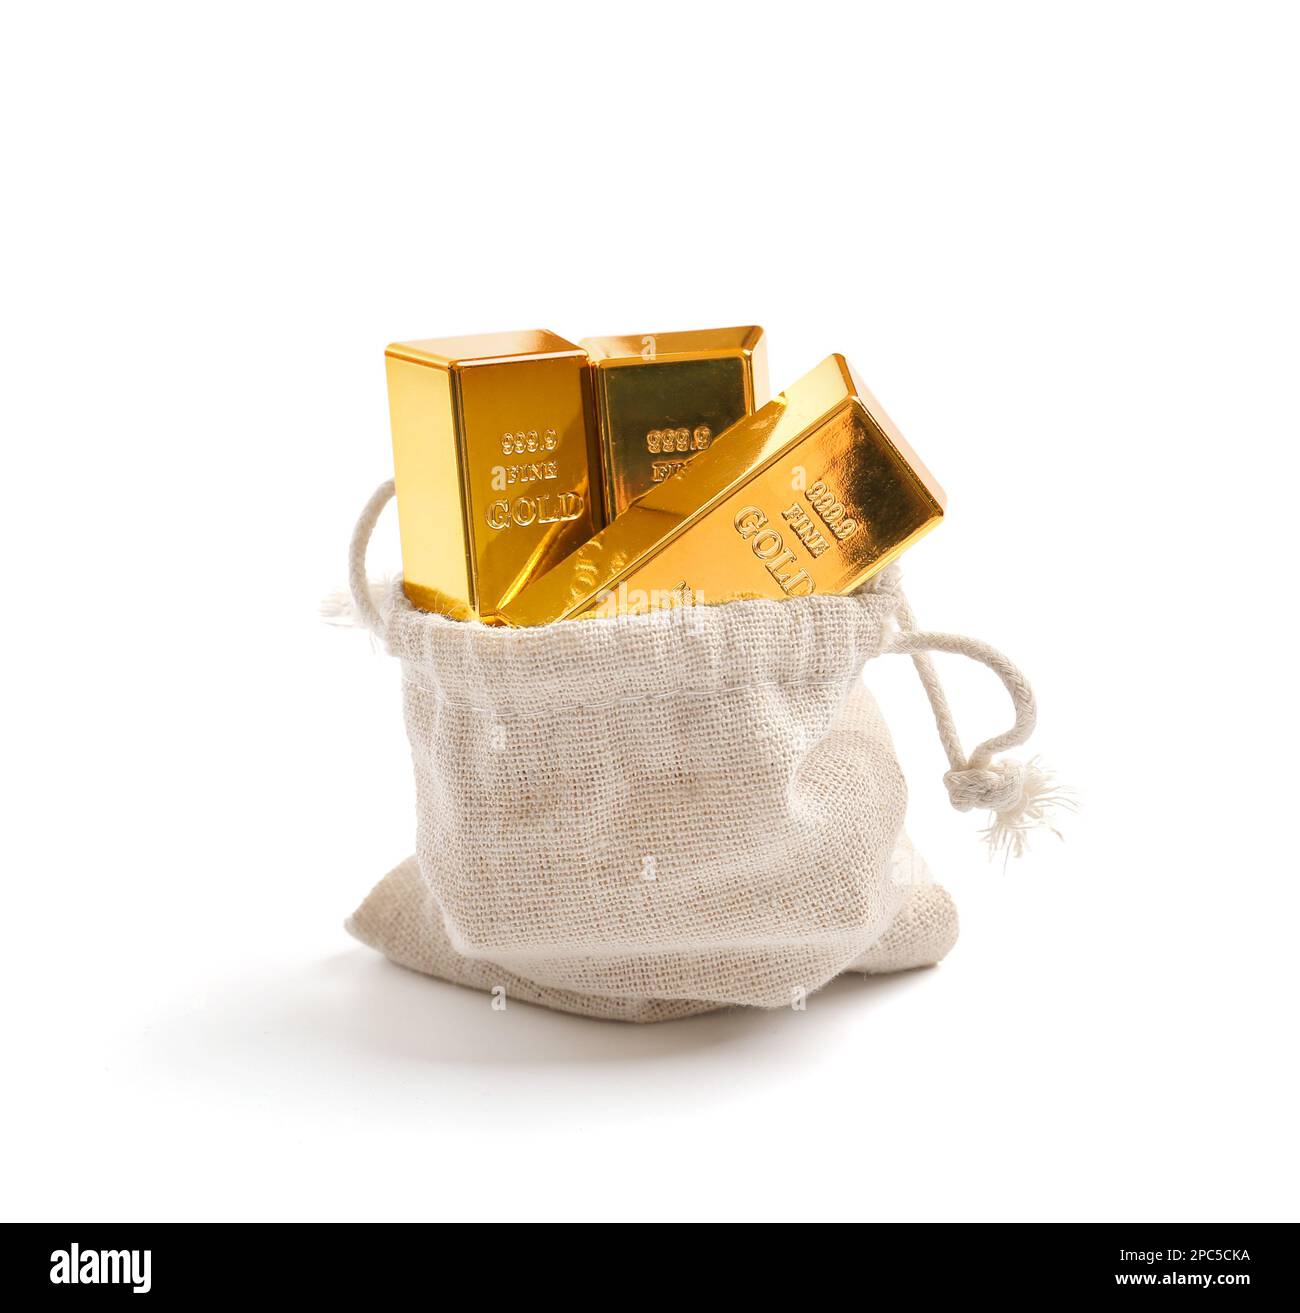 Ein kleiner Beutel Gold auf weißem Hintergrund. Goldbarren in einer Tasche als Sparsymbol. Goldinvestitionsoption Stockfoto